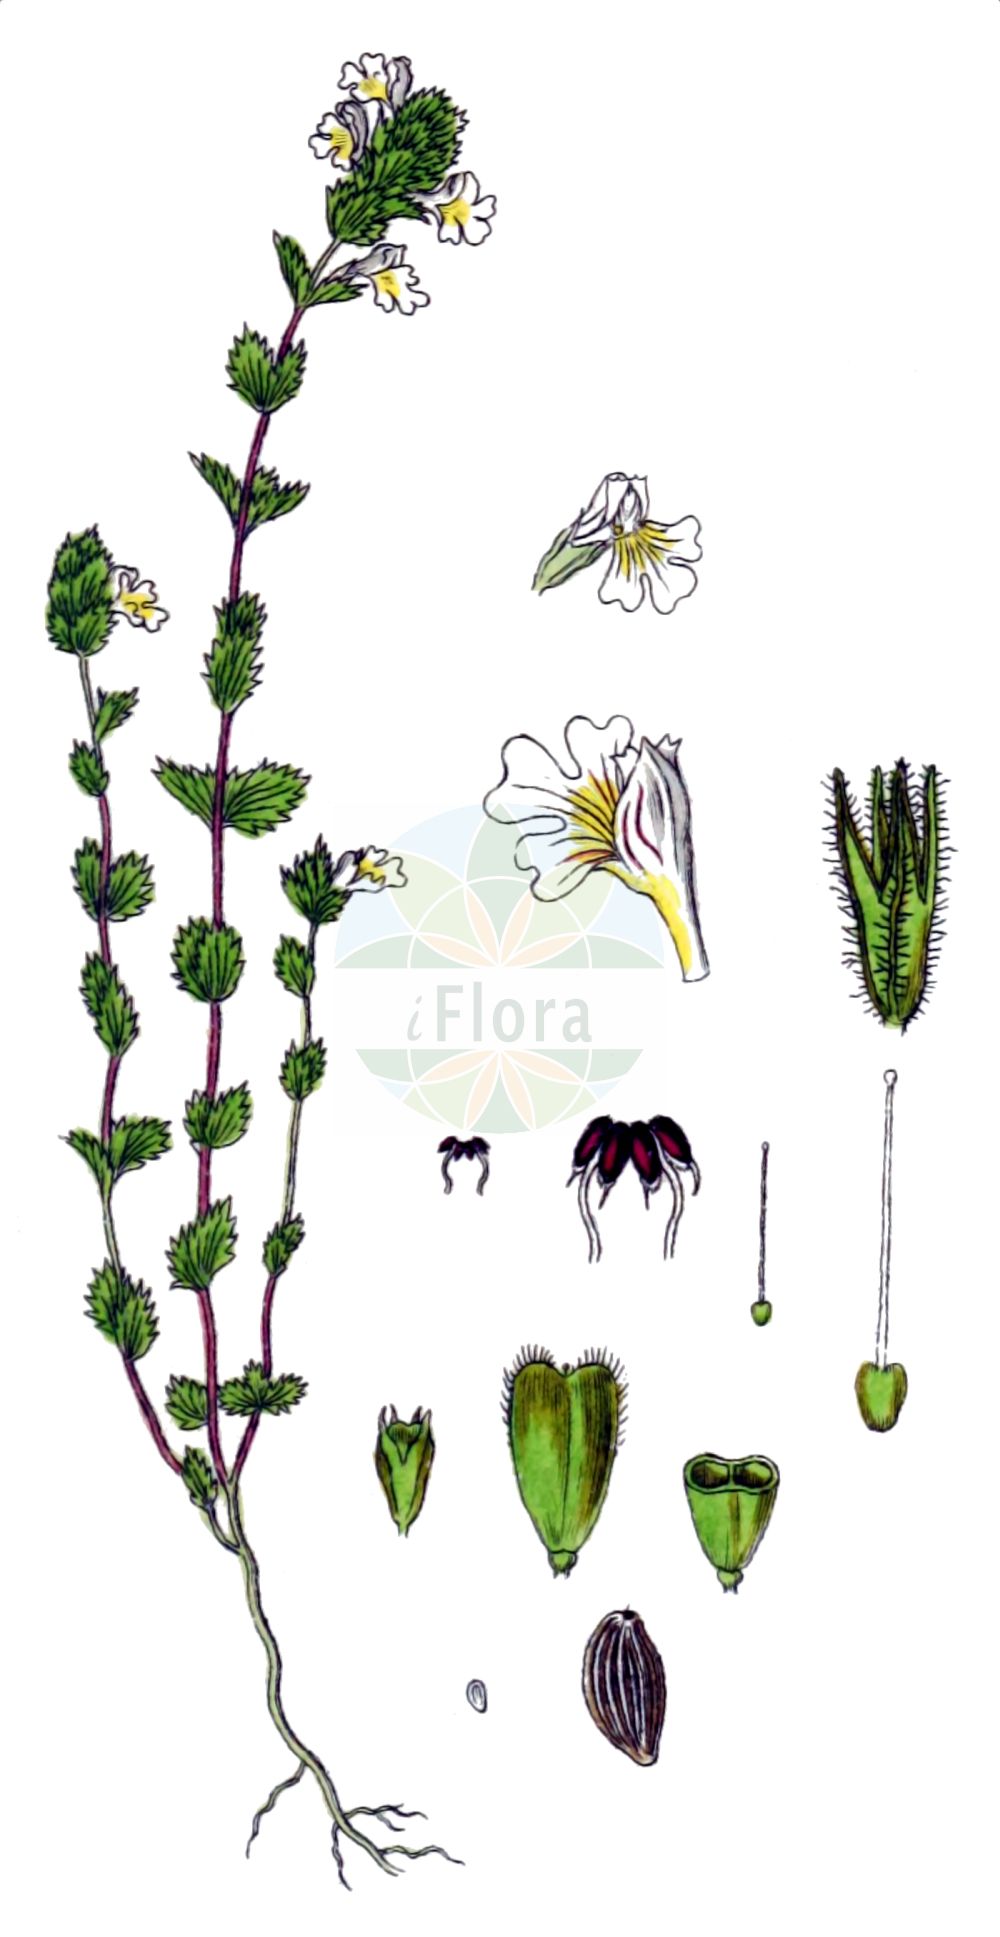 Historische Abbildung von Euphrasia rostkoviana (Bunter Augentrost - Eyebright). Das Bild zeigt Blatt, Bluete, Frucht und Same. ---- Historical Drawing of Euphrasia rostkoviana (Bunter Augentrost - Eyebright). The image is showing leaf, flower, fruit and seed.(Euphrasia rostkoviana,Bunter Augentrost,Eyebright,Euphrasia officinalis,Euphrasia pratensis,Euphrasia rostkoviana,Bunter Augentrost,Gewoehnlicher Augentrost,Grosser Augentrost,Wiesen-Augentrost,Eyebright,Euphrasia,Augentrost,Eyebright,Orobanchaceae,Sommerwurzgewächse,Broomrape family,Blatt,Bluete,Frucht,Same,leaf,flower,fruit,seed,Sturm (1796f))